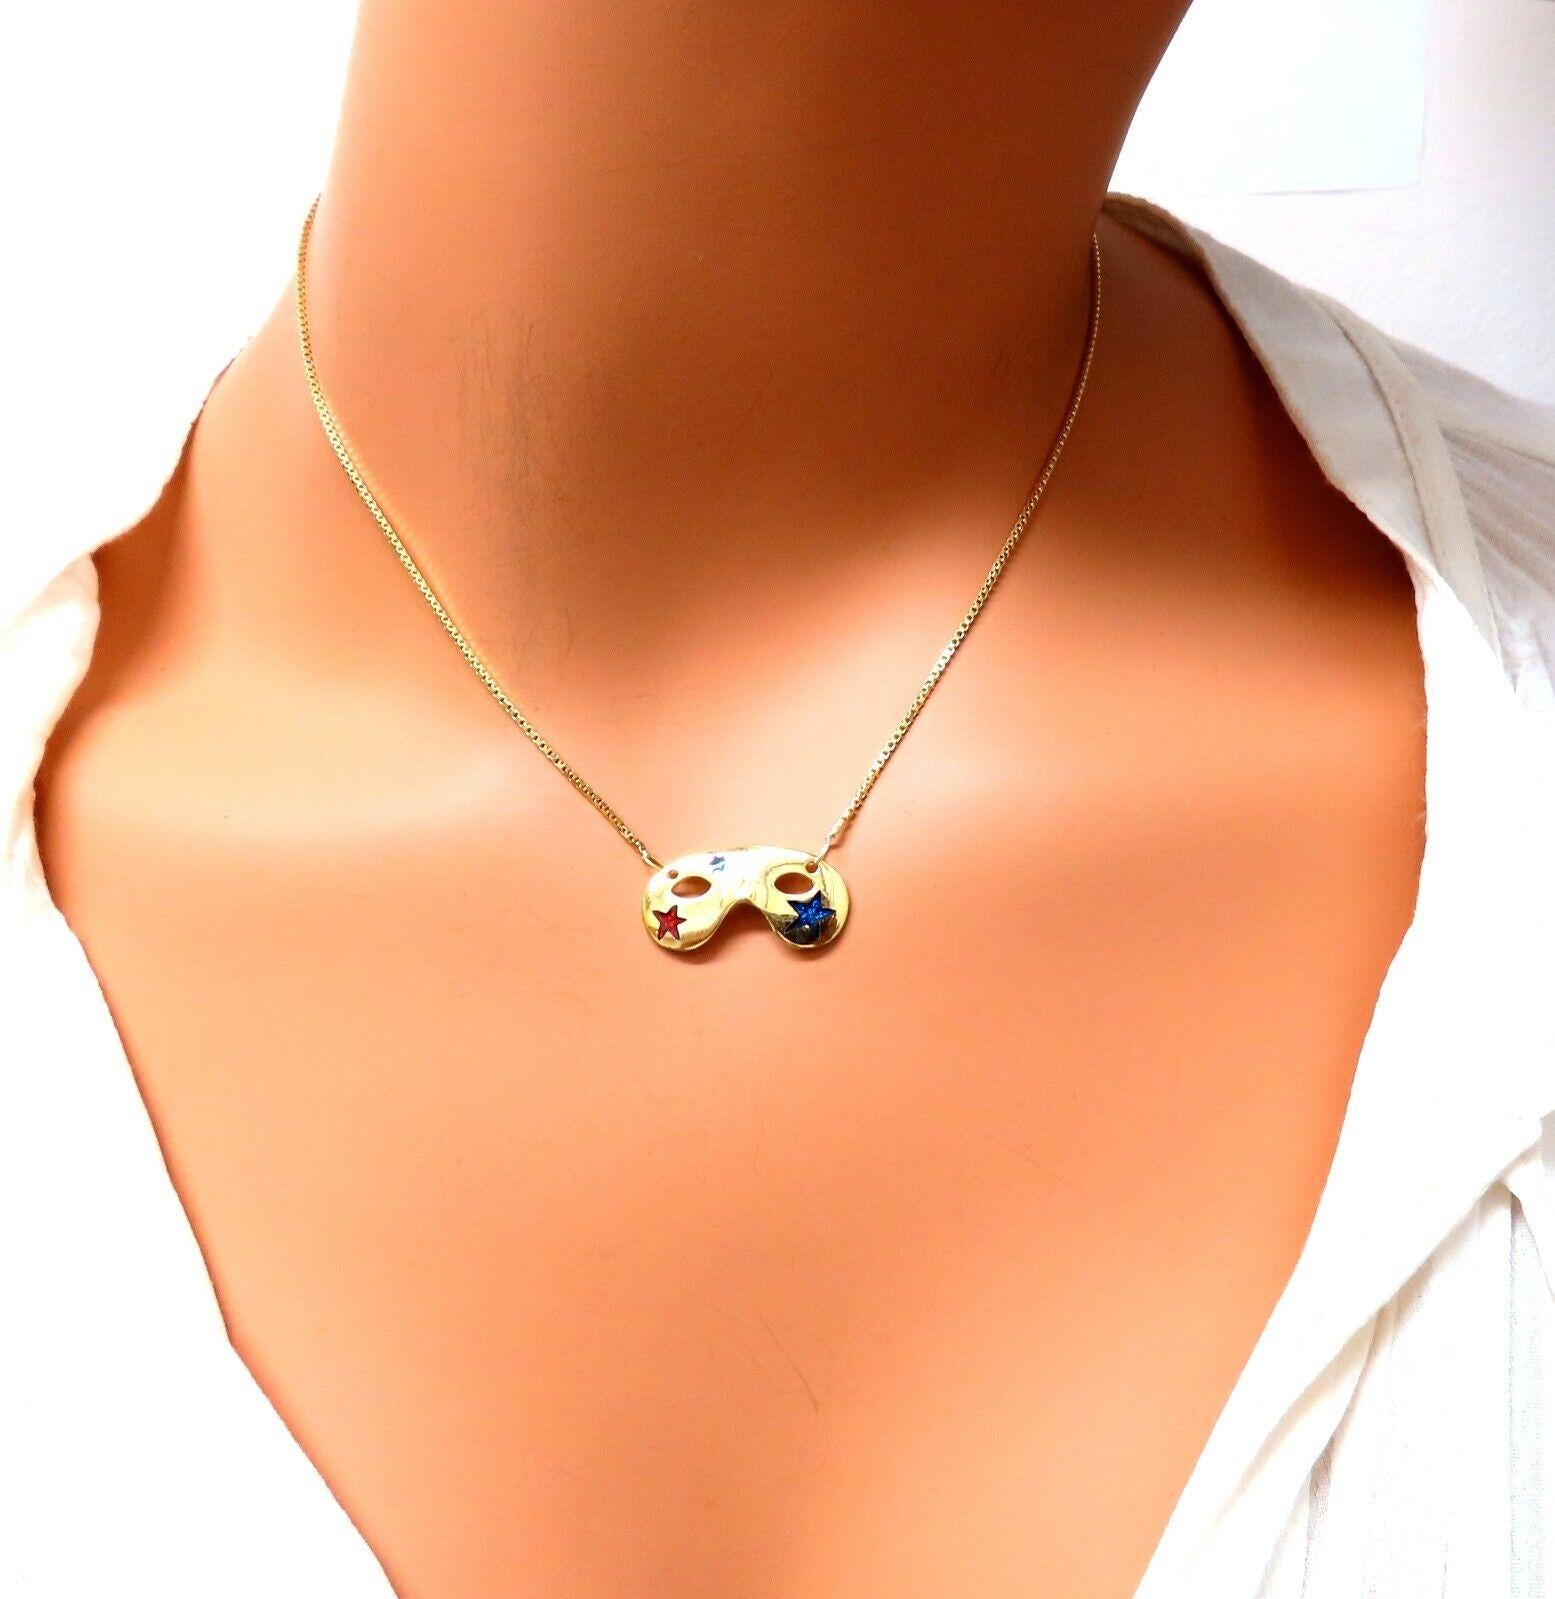 memorabilia necklace